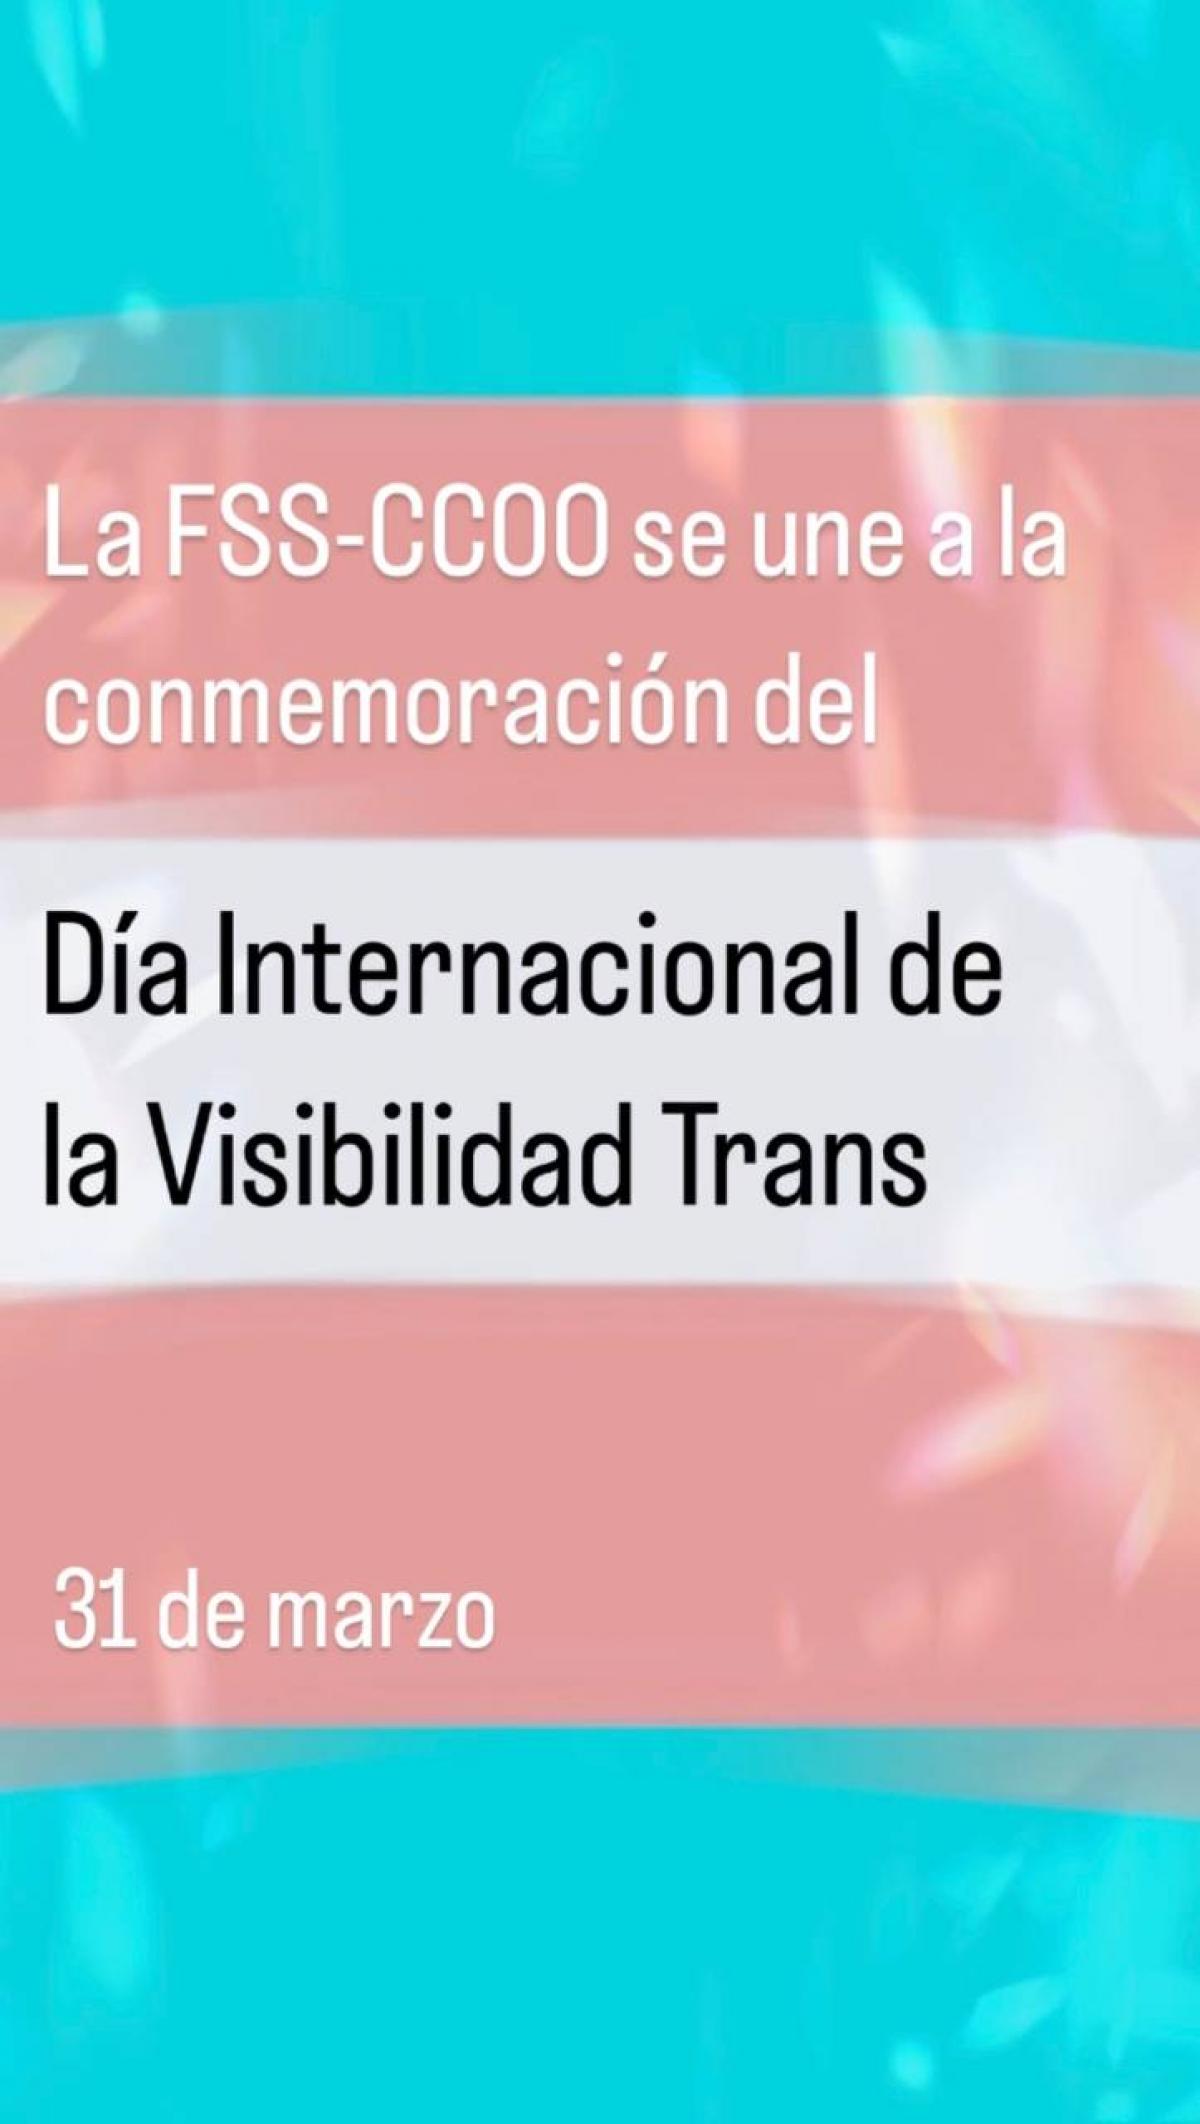 31 de marzo, Día Internacional de la Visibilidad Trans